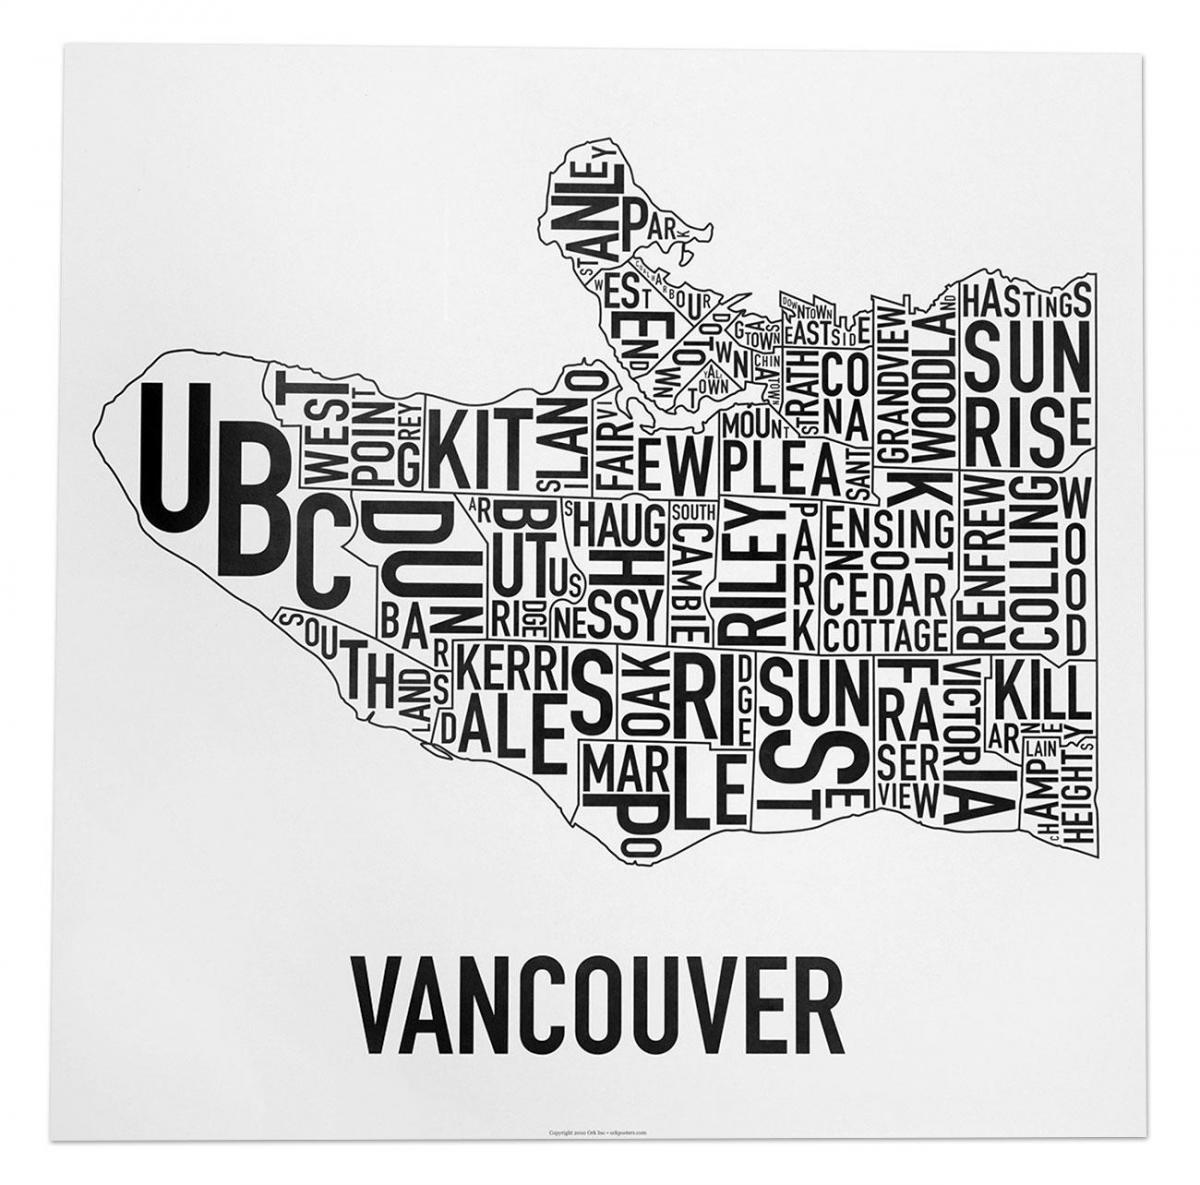 Peta dari vancouver poster